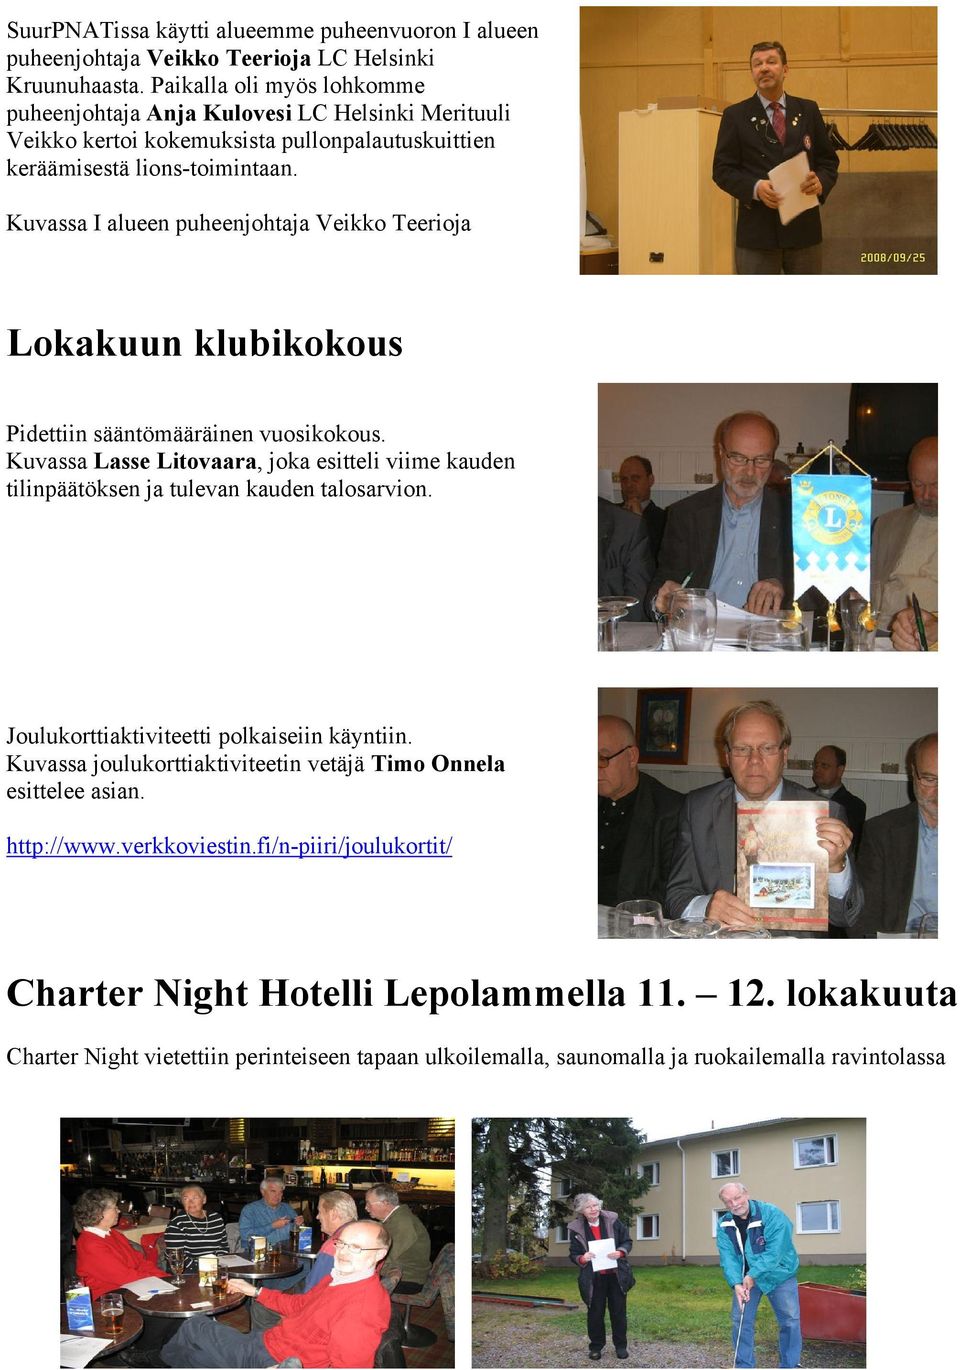 Kuvassa I alueen puheenjohtaja Veikko Teerioja Lokakuun klubikokous Pidettiin sääntömääräinen vuosikokous.